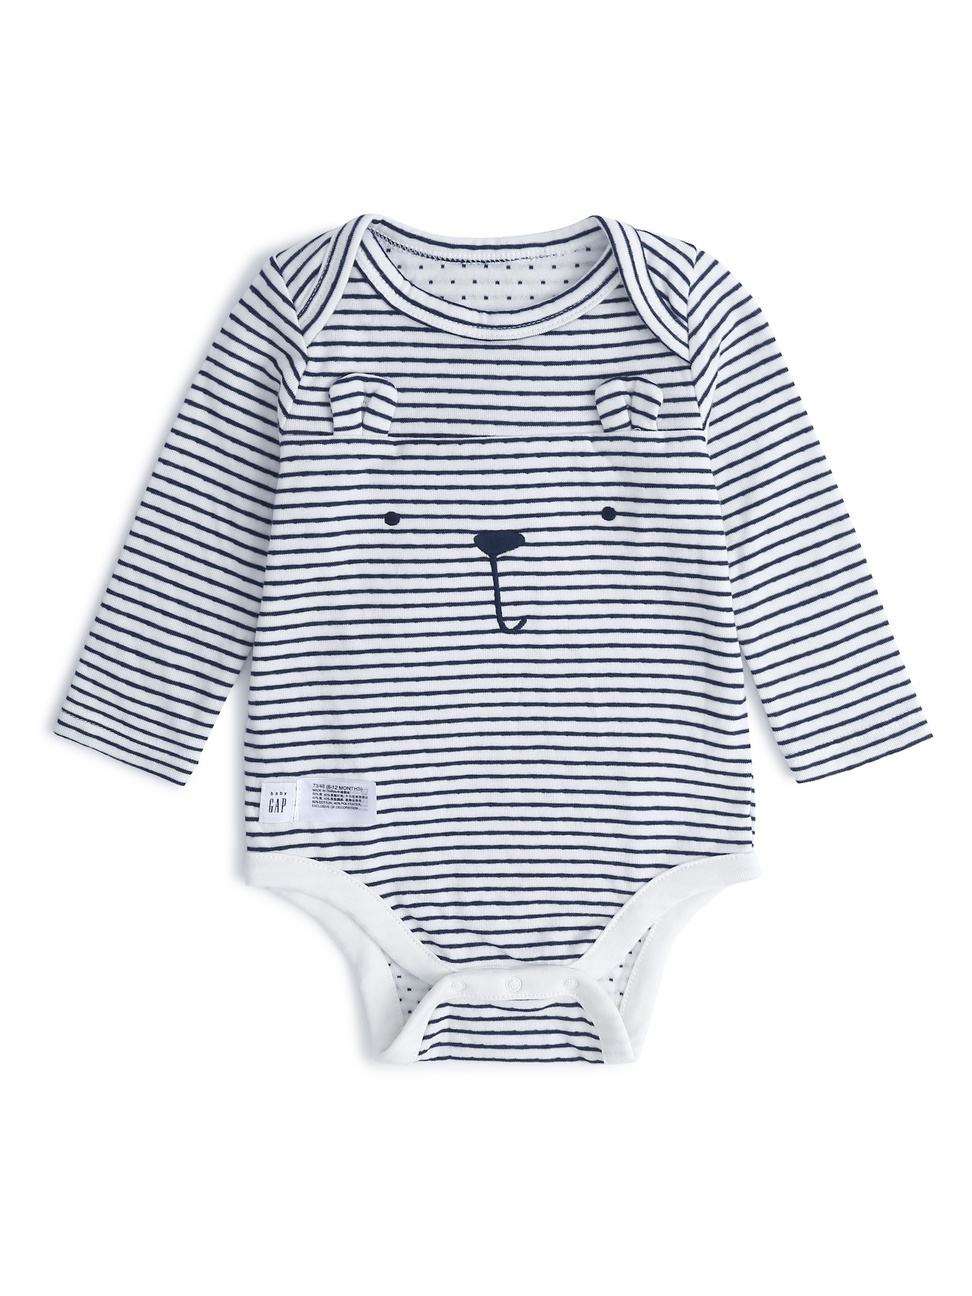 嬰兒裝|棉質條紋立體小熊造型包屁衣-象牙白